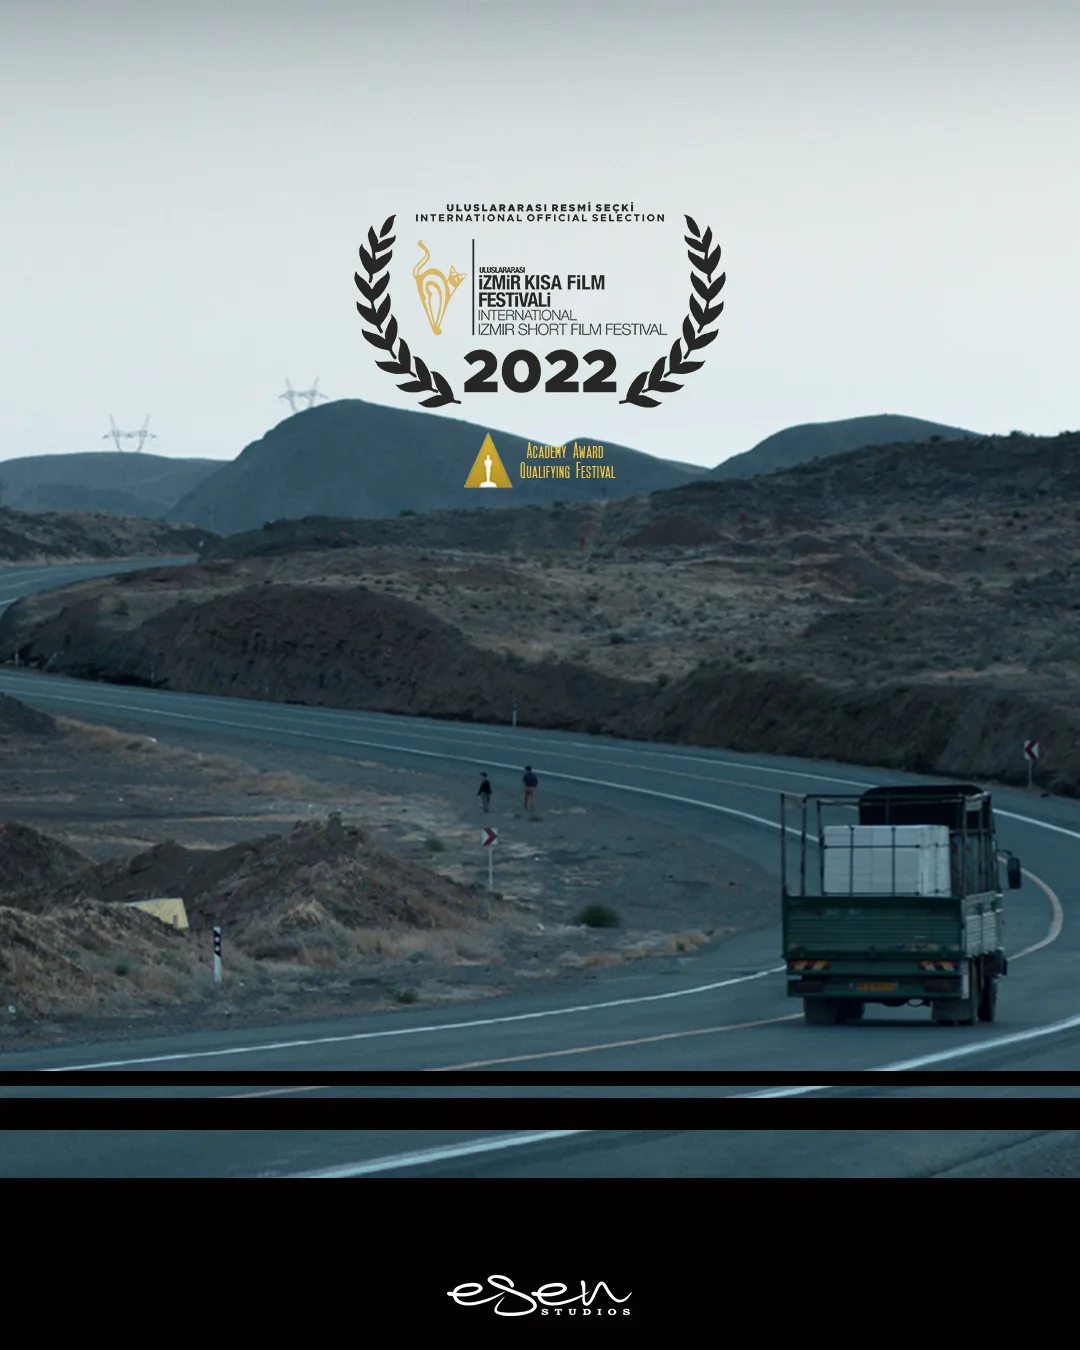 Distribuzione del cortometraggio "A shared path", premiere turca